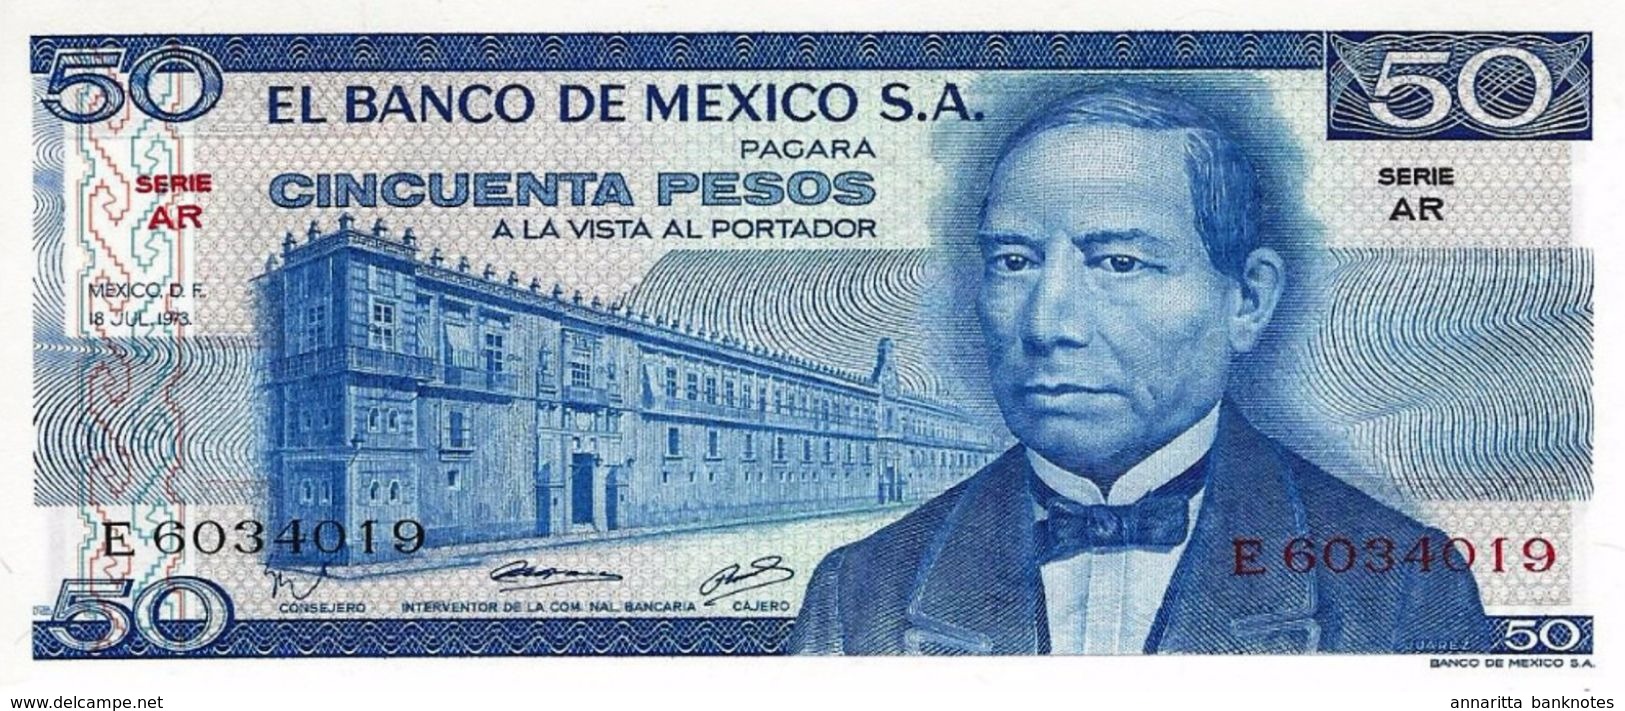 MEXIQUE 50 PESOS 1973 P-65a NEUF SERIE AR [MX065a] - Mexico